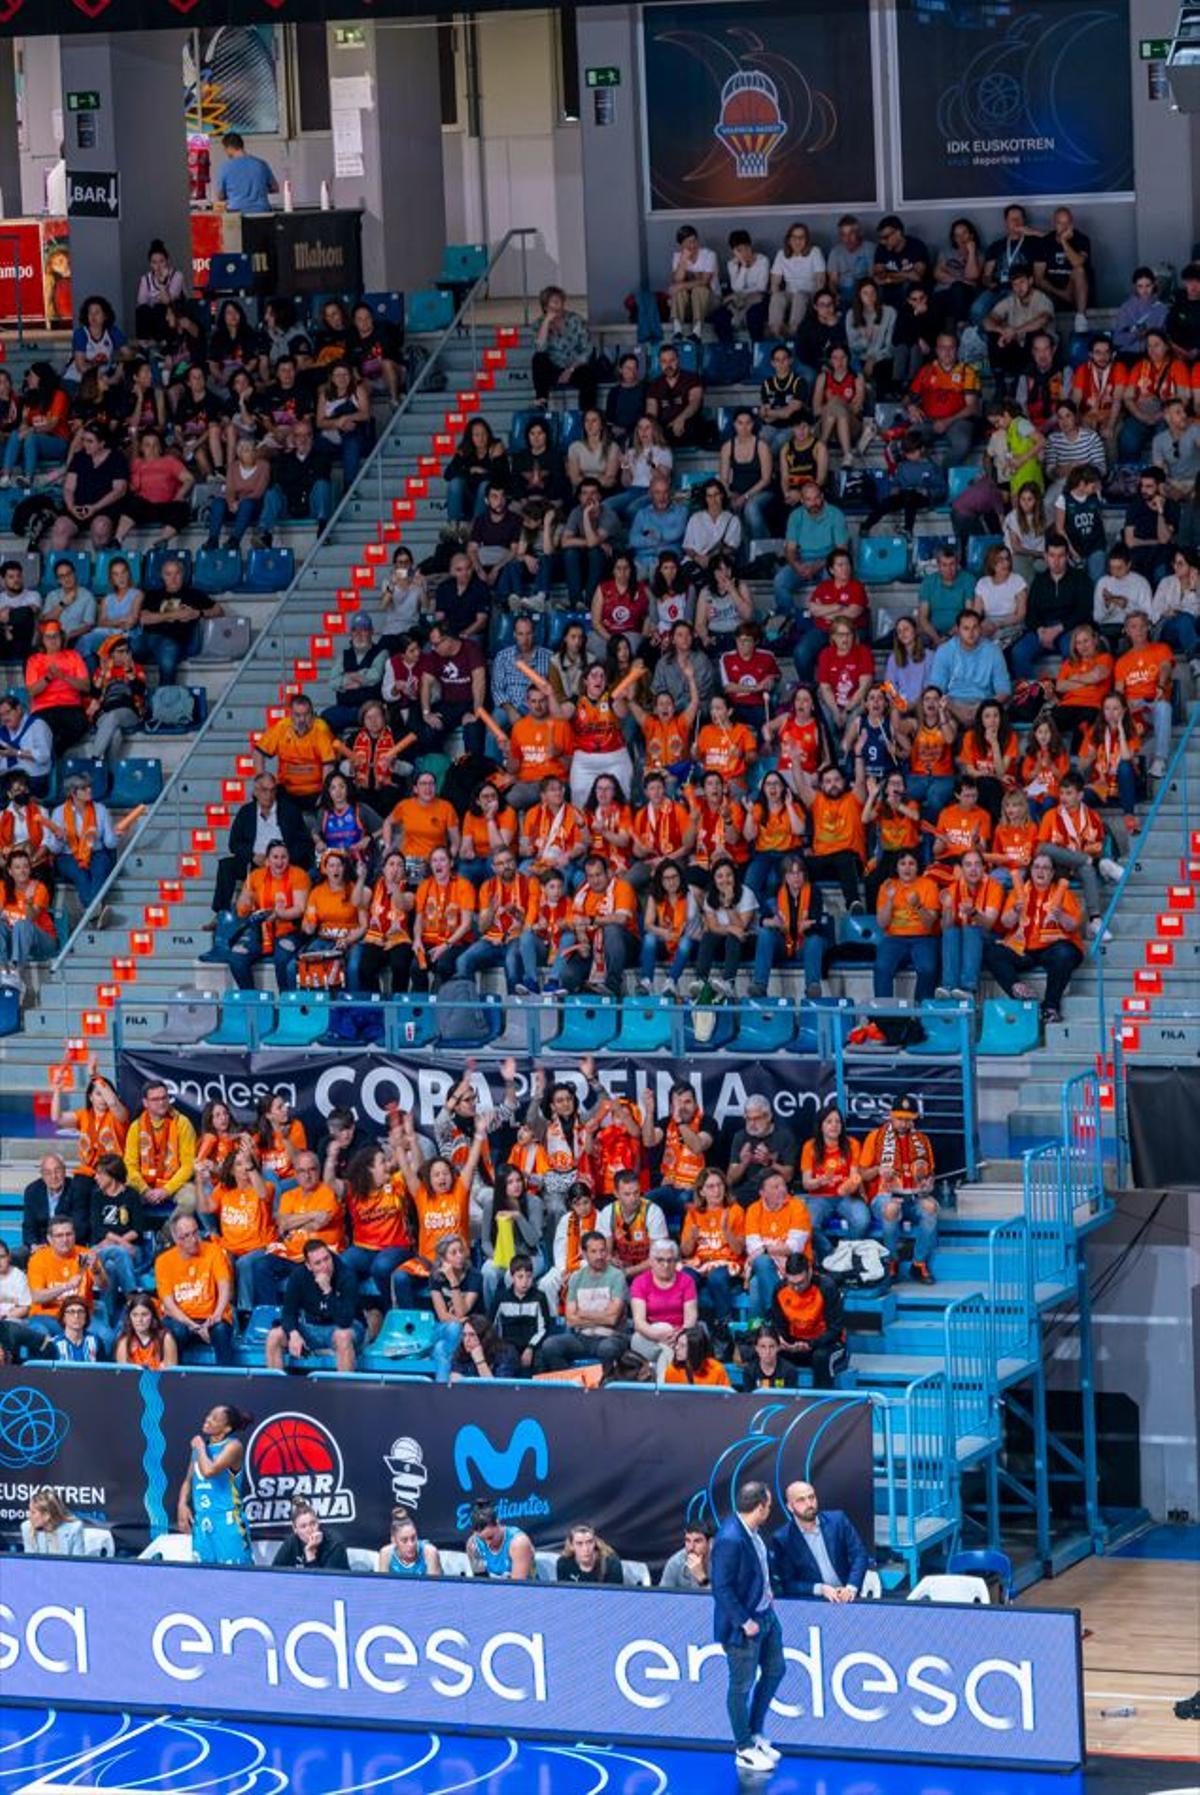 La afición del Valencia Basket en Huelva, una motivación más para las jugadoras taronja